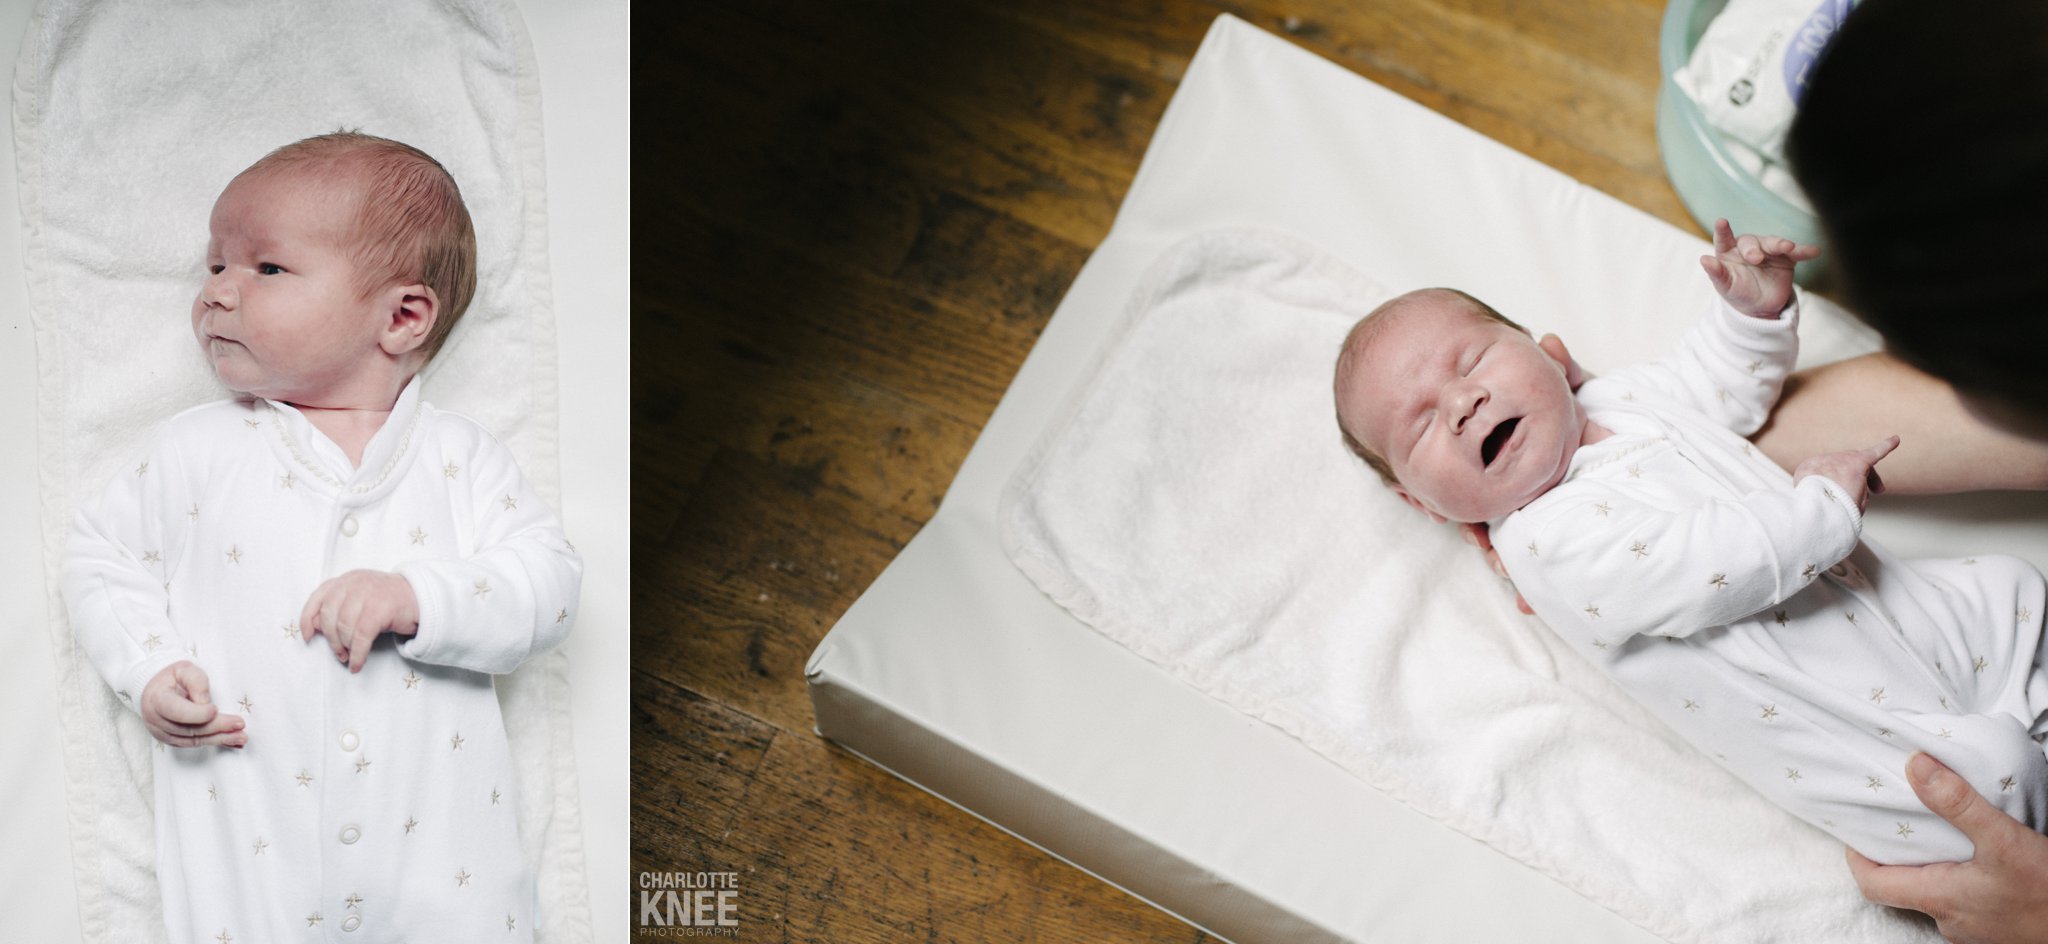 Newborn-Photography-Baby-Jamie-Charlotte-Knee-Photography_0007.jpg